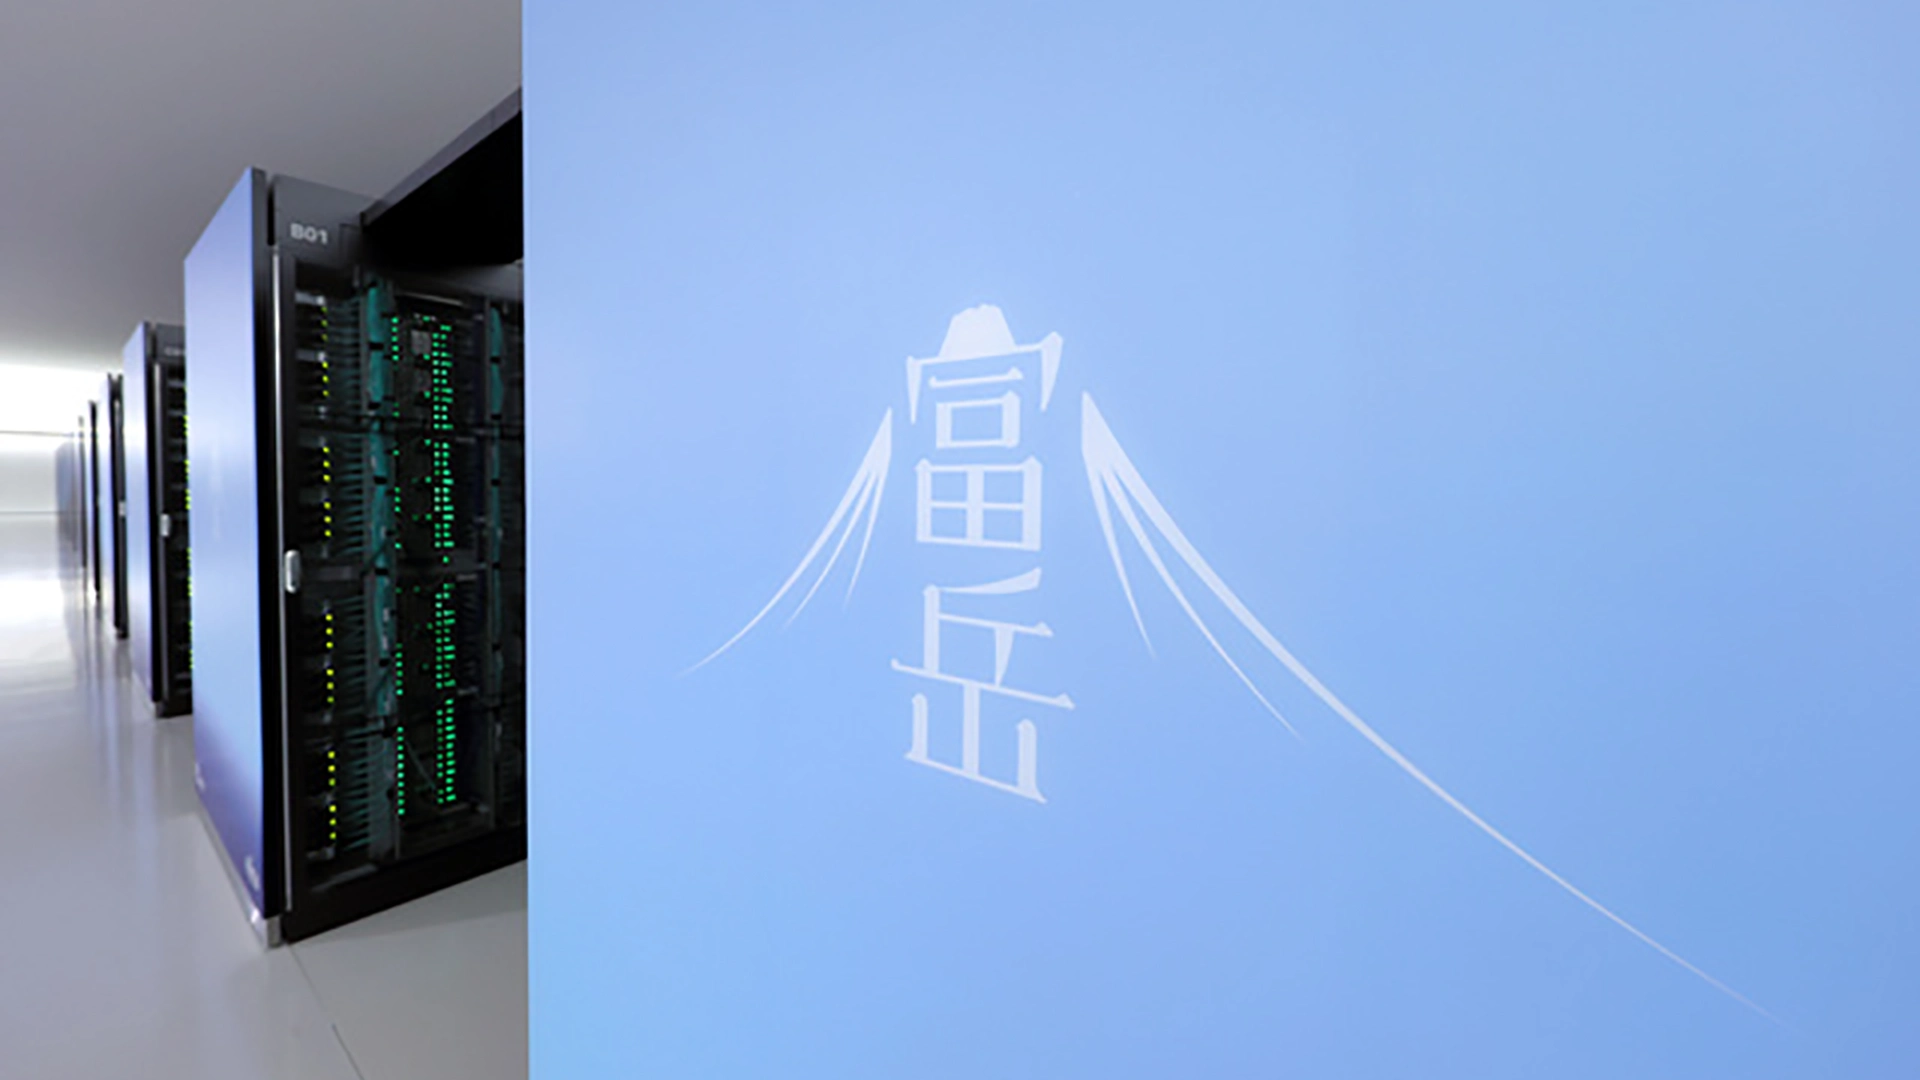 Conociendo a la supercomputadora Fugaku: El ordenador más potente del planeta. Fotografía tomada por Minoru Nishioka, Chuo-ku, Kobe City, en la mañana del 16 de junio de 2020: asahi.com.